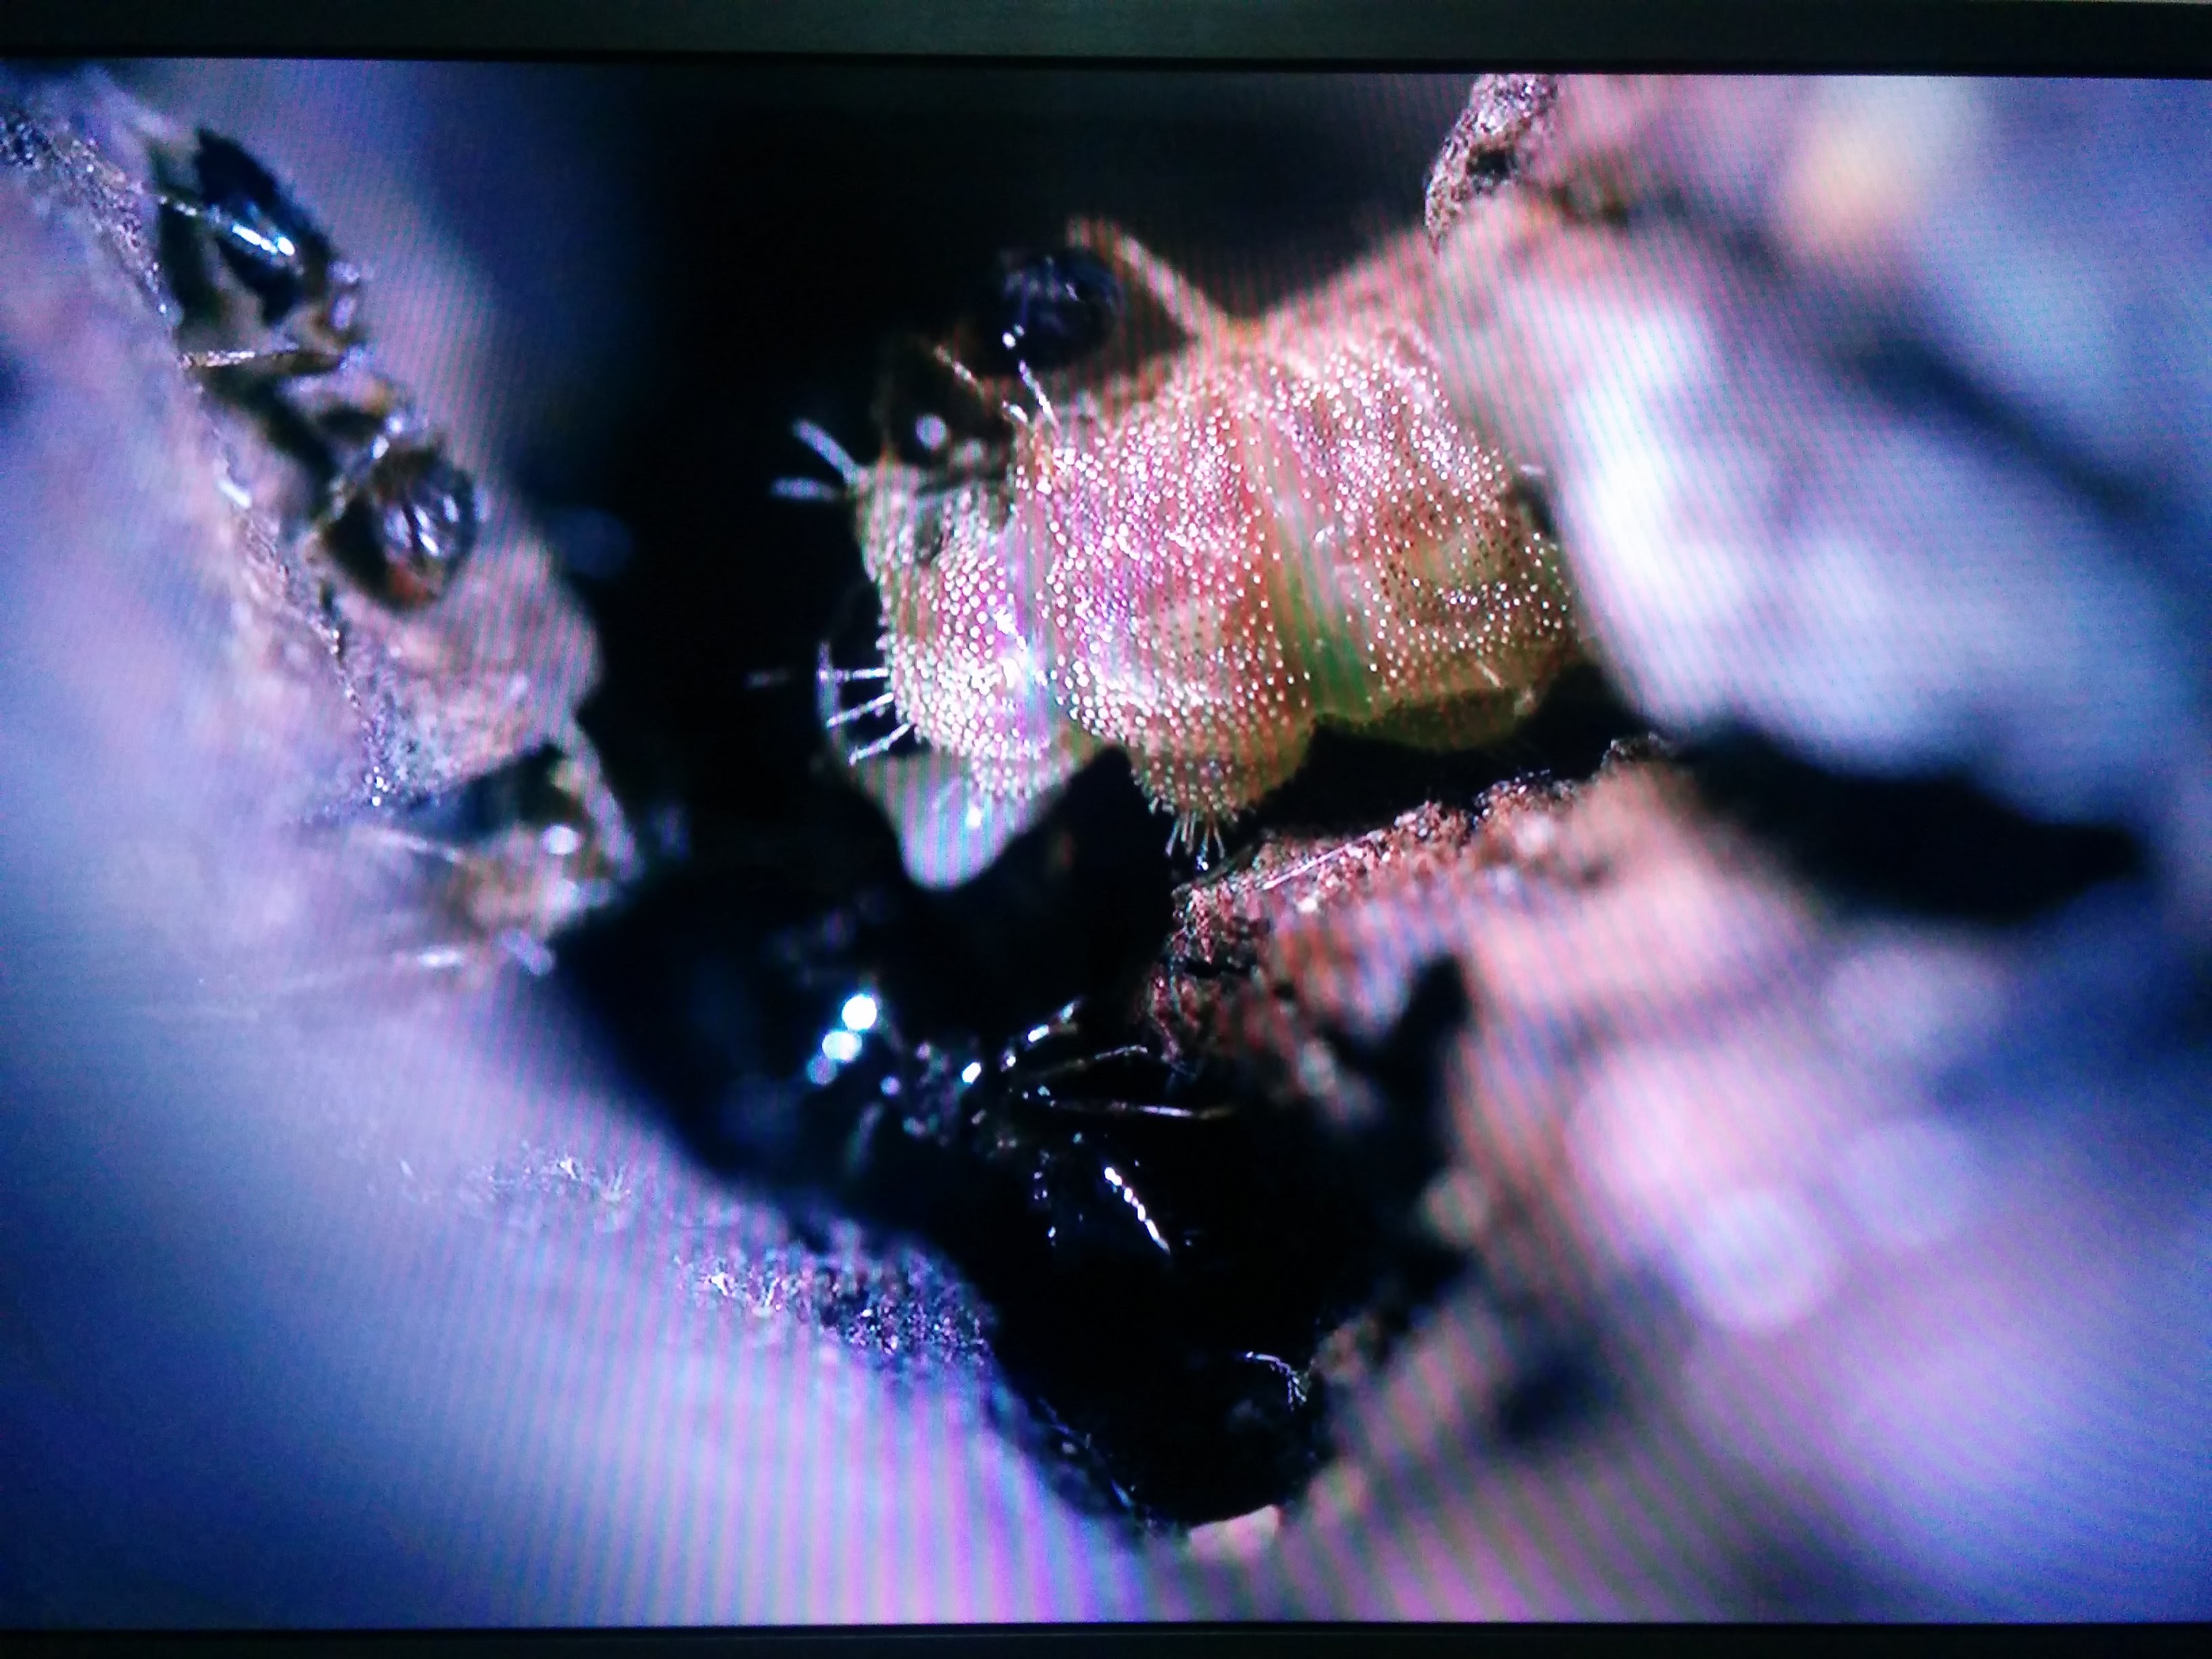 IMG_20151011_210152.jpg 쌍꼬리부전나비 애벌레를 돌보는 마쓰무라꼬리치레개미